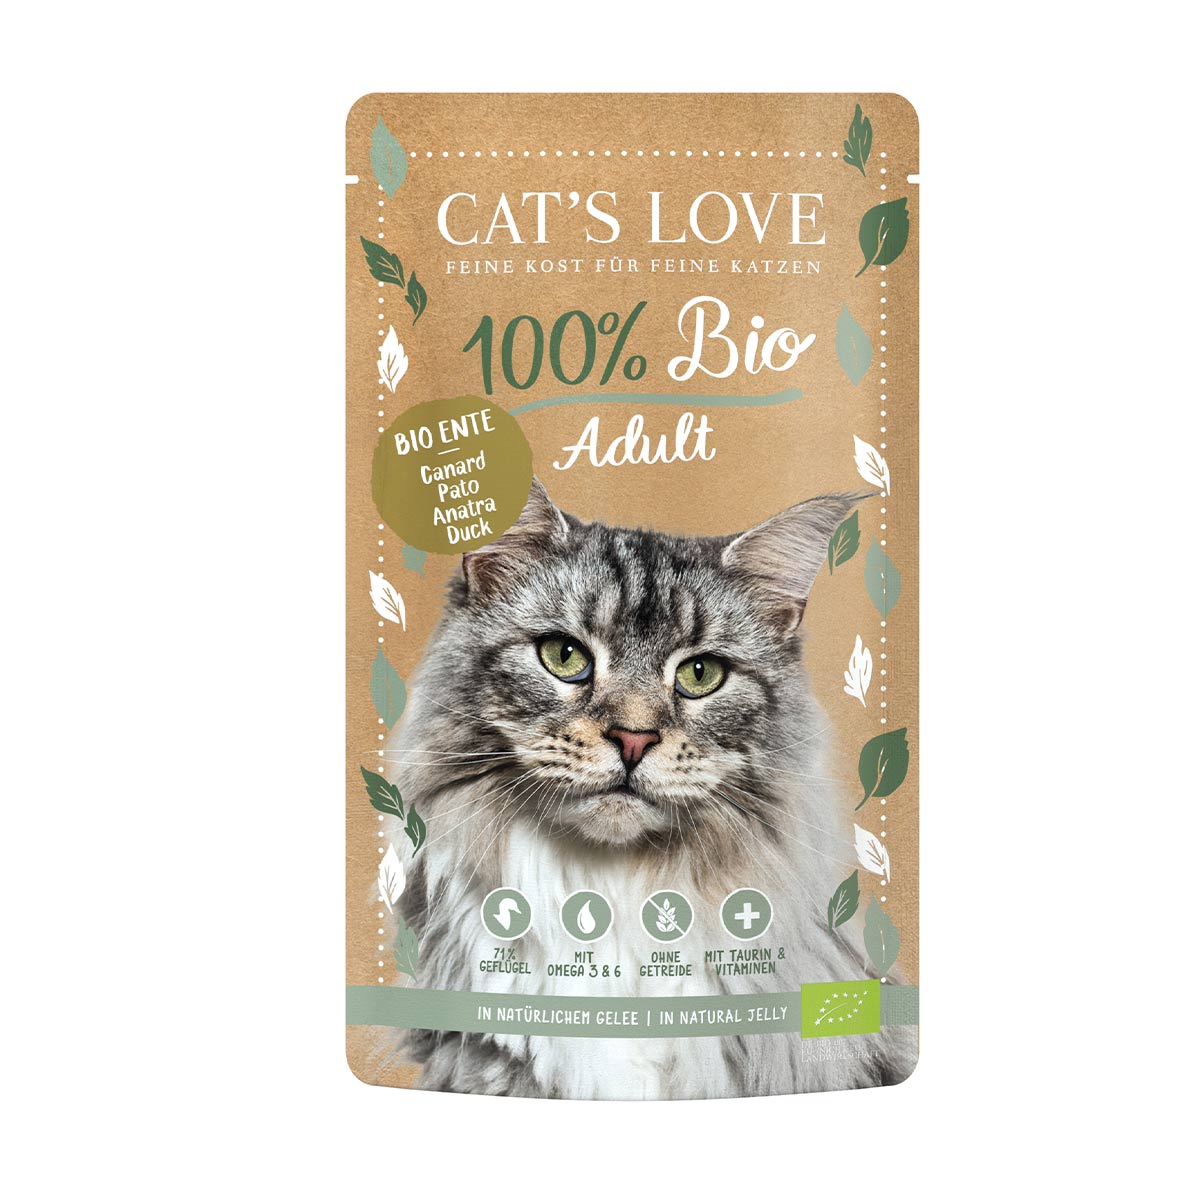 Cat's Love ADULT BIO Ente 6x100g von Cat's Love